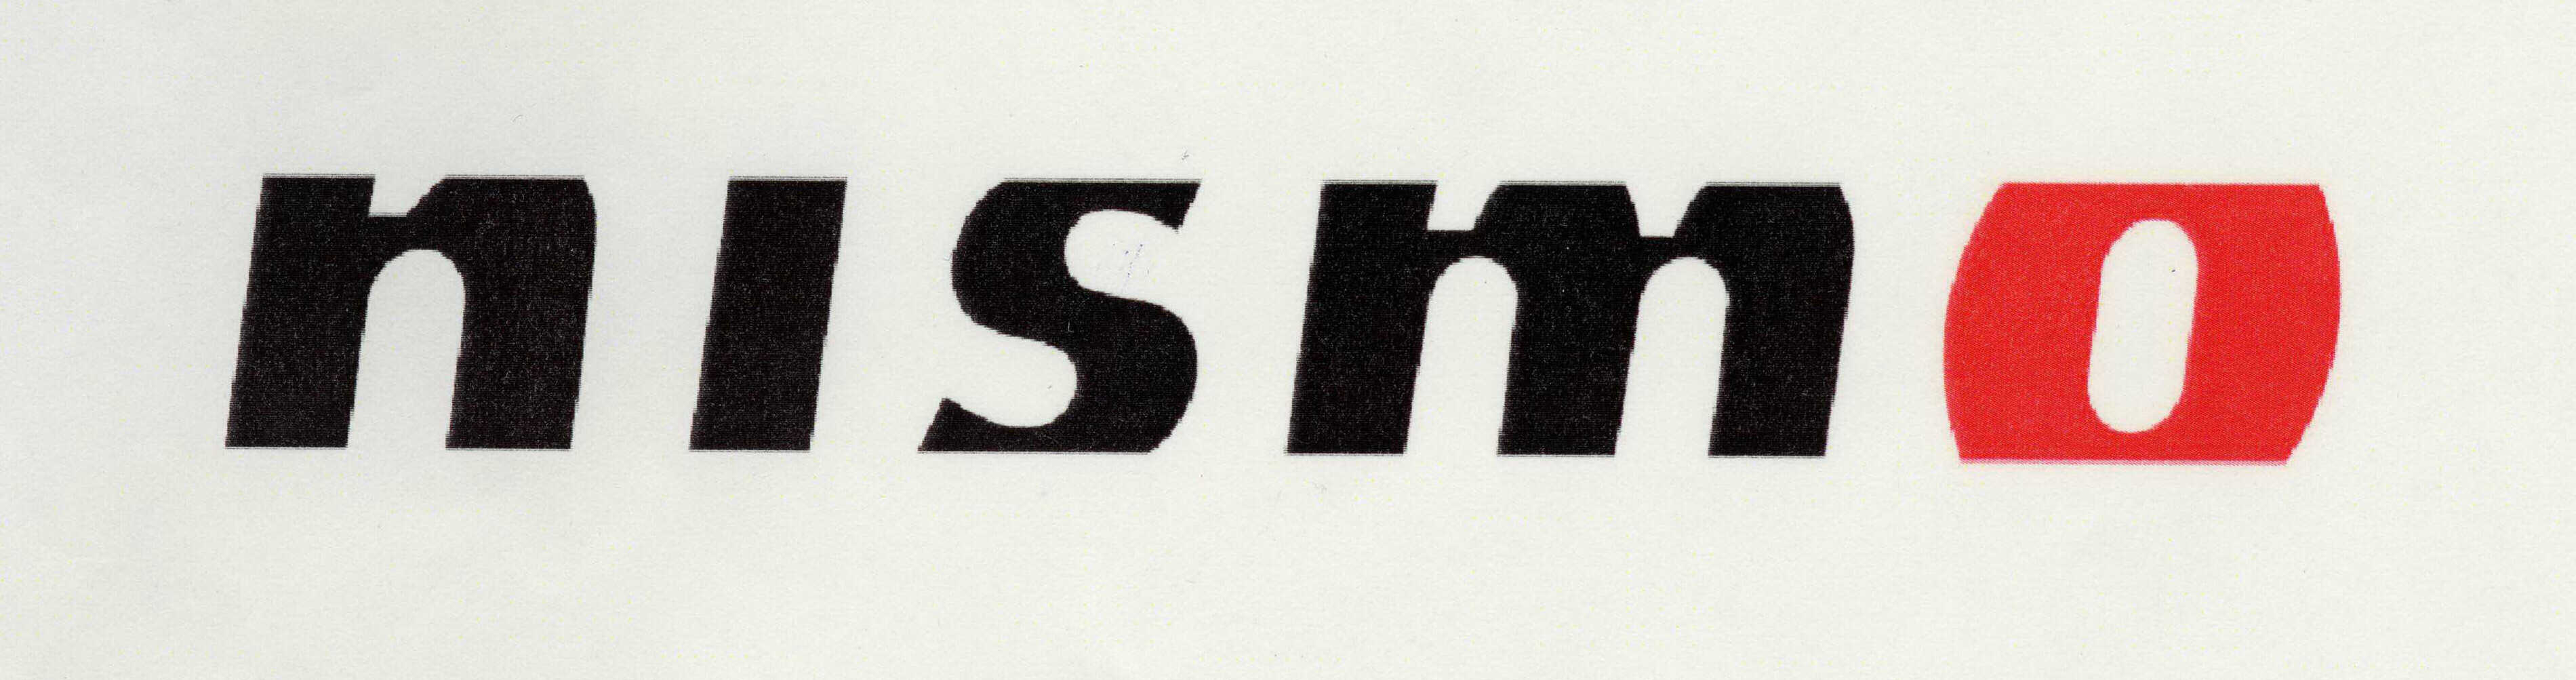 Trademark Logo NISMO